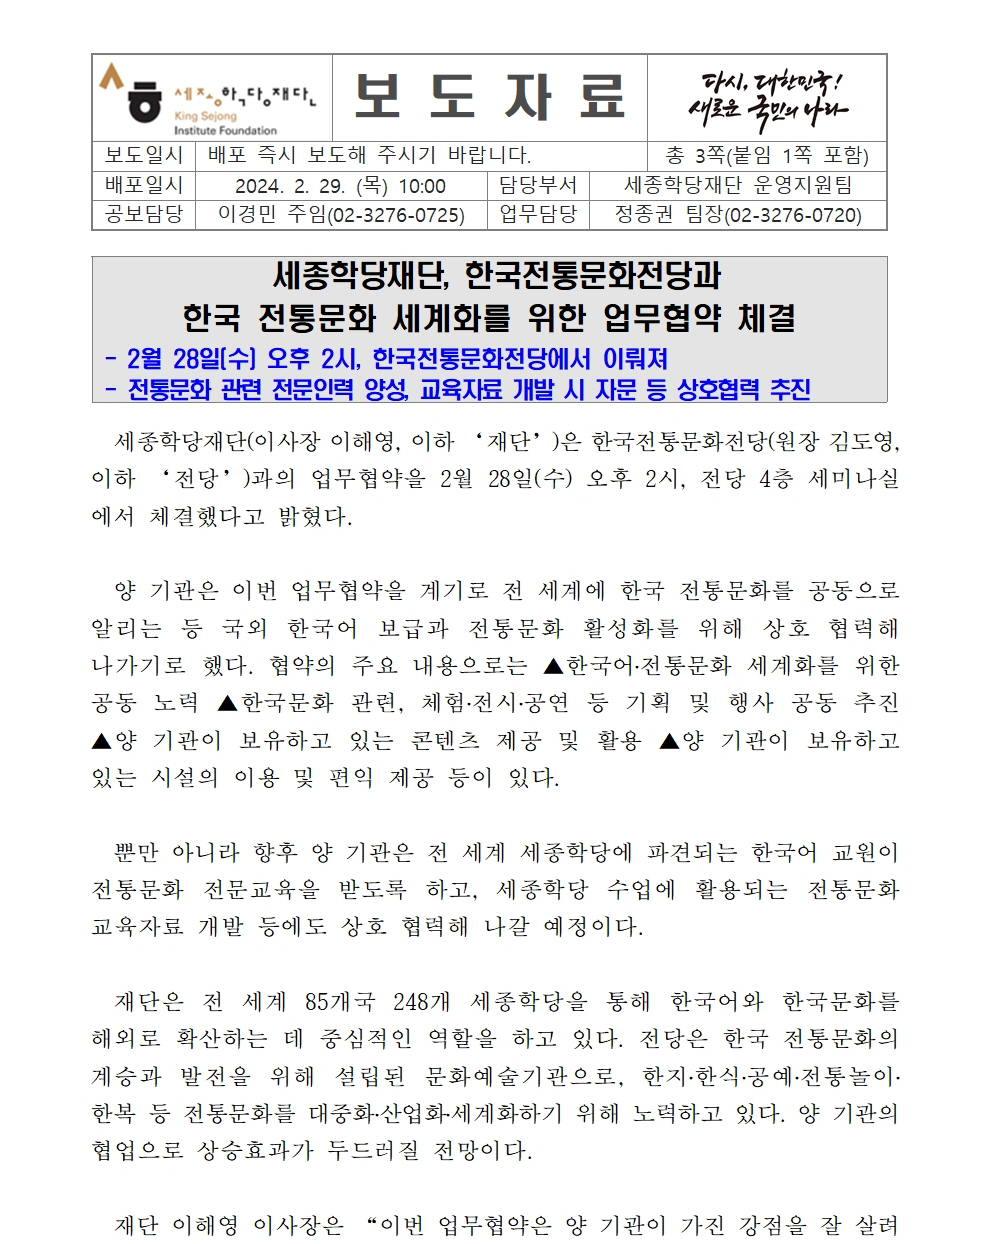 세종학당재단 한국전통문화전당과 업무협약 체결(보도자료)001